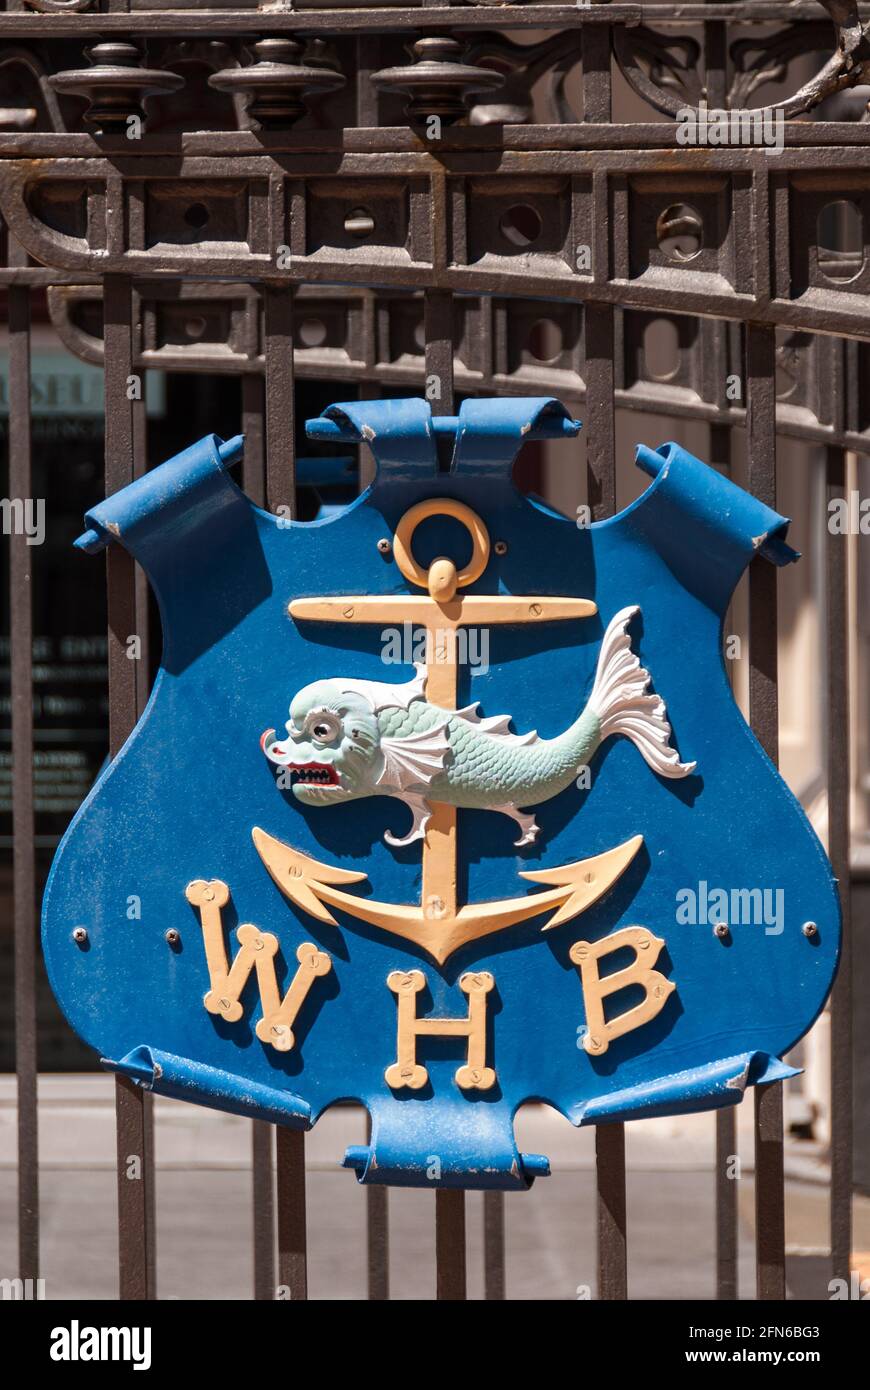 Wappenschild des 1880 gegründeten Hafenbetriebs von Wellington, Neuseeland - Emblem of Wellington Harbour Board, founded in 1880. Stock Photo